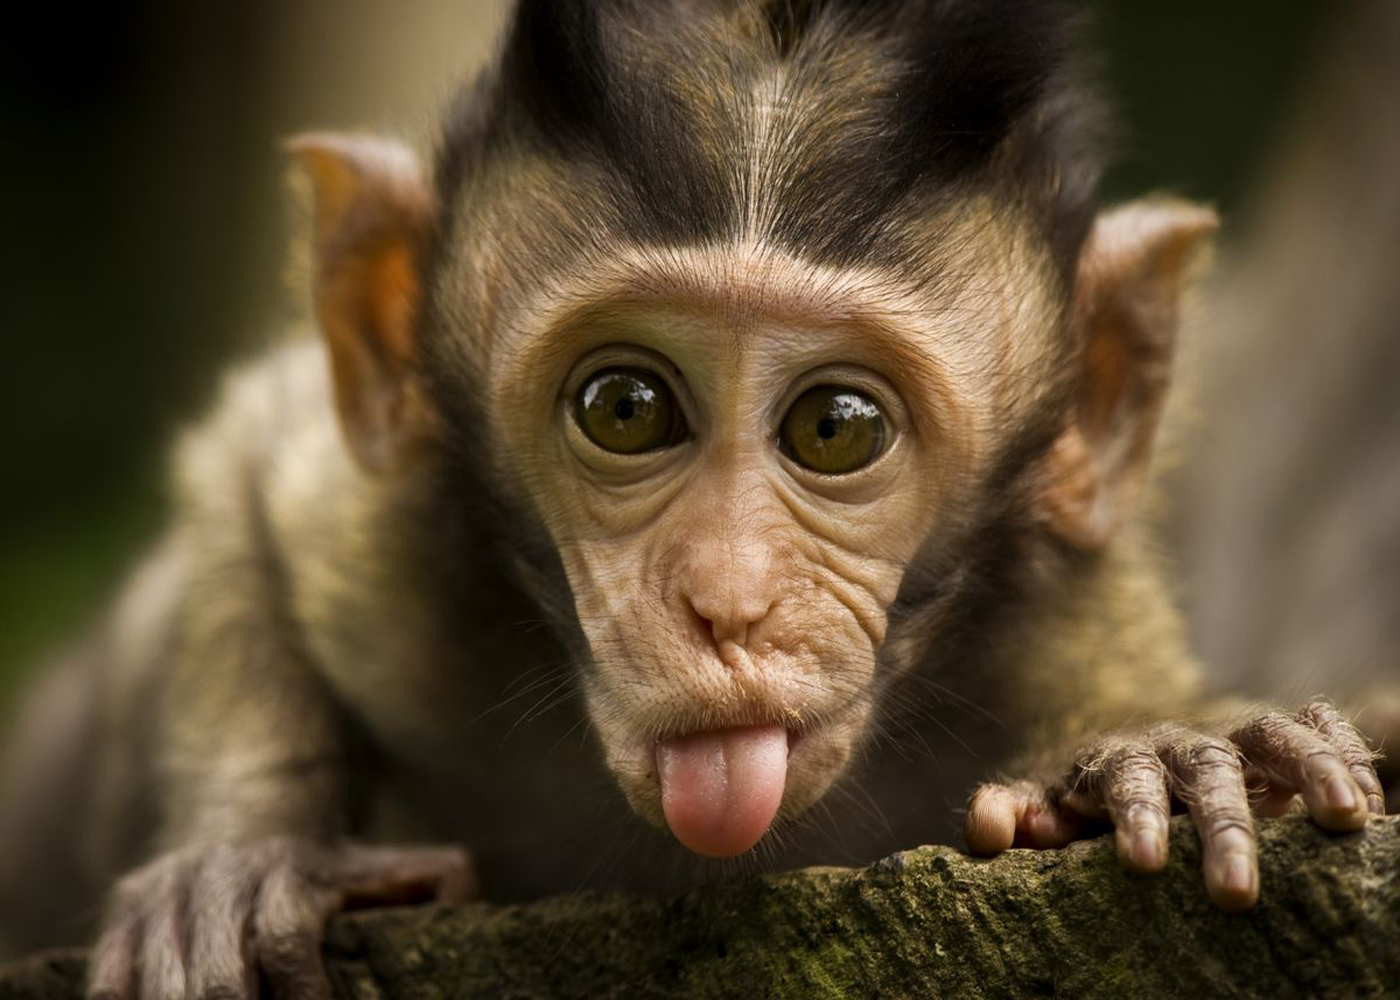 Indian Monkey Funny For Windows Wallpaper Wallpaperlepi